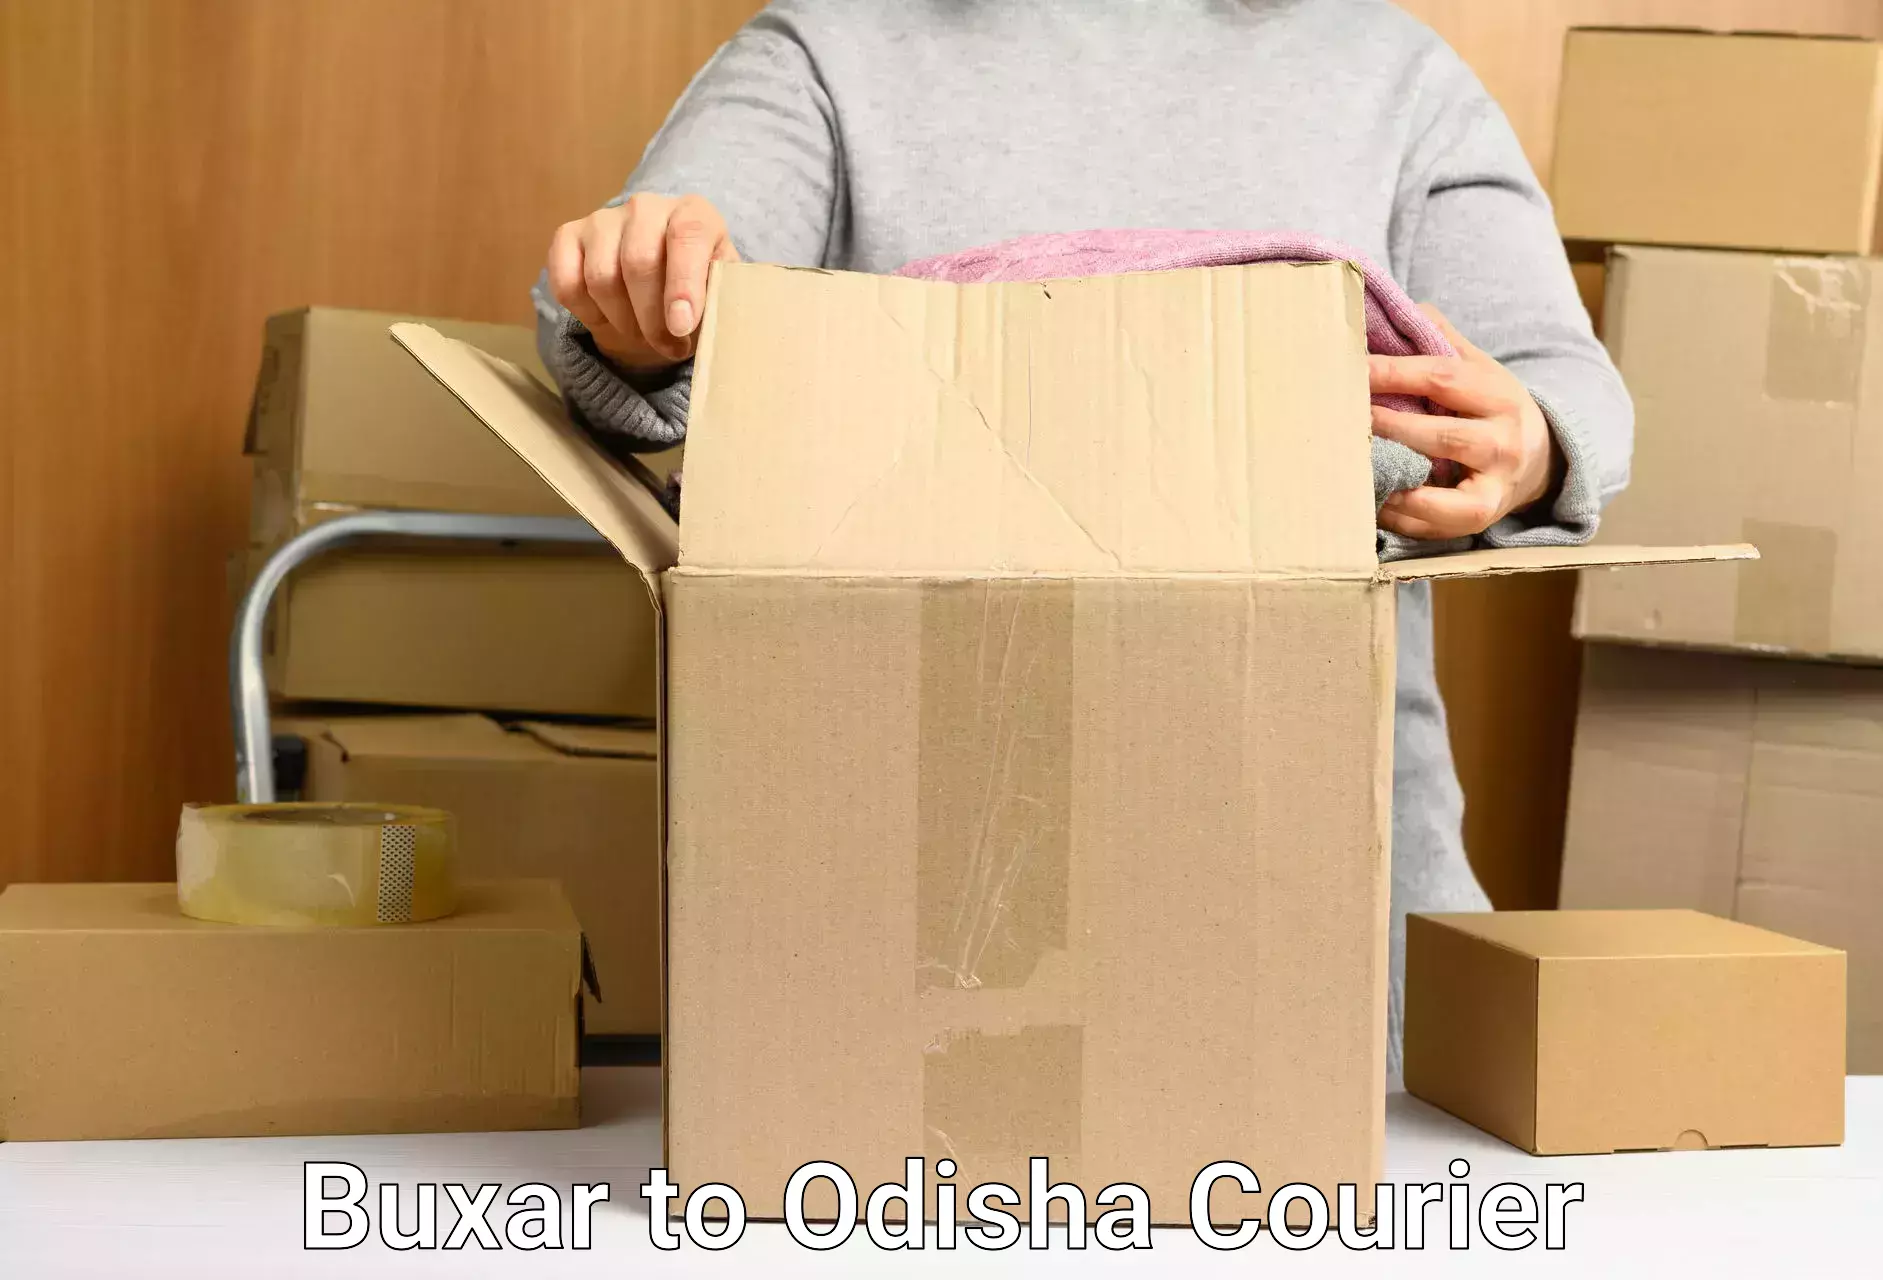 Fast parcel dispatch Buxar to Boudh